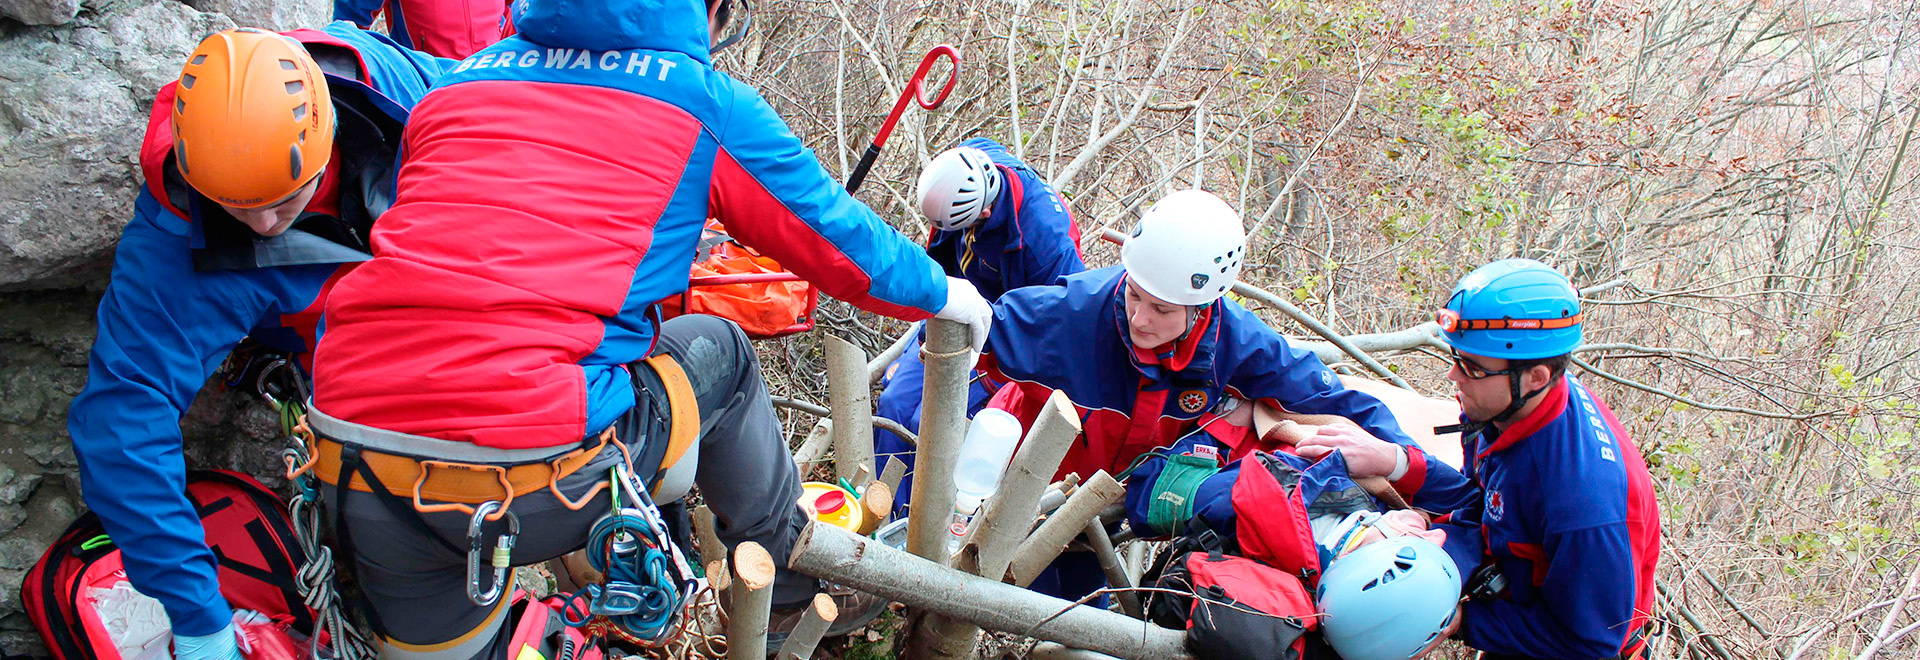 Rettungssanitäter der Bergwacht bergen einen Verletzten